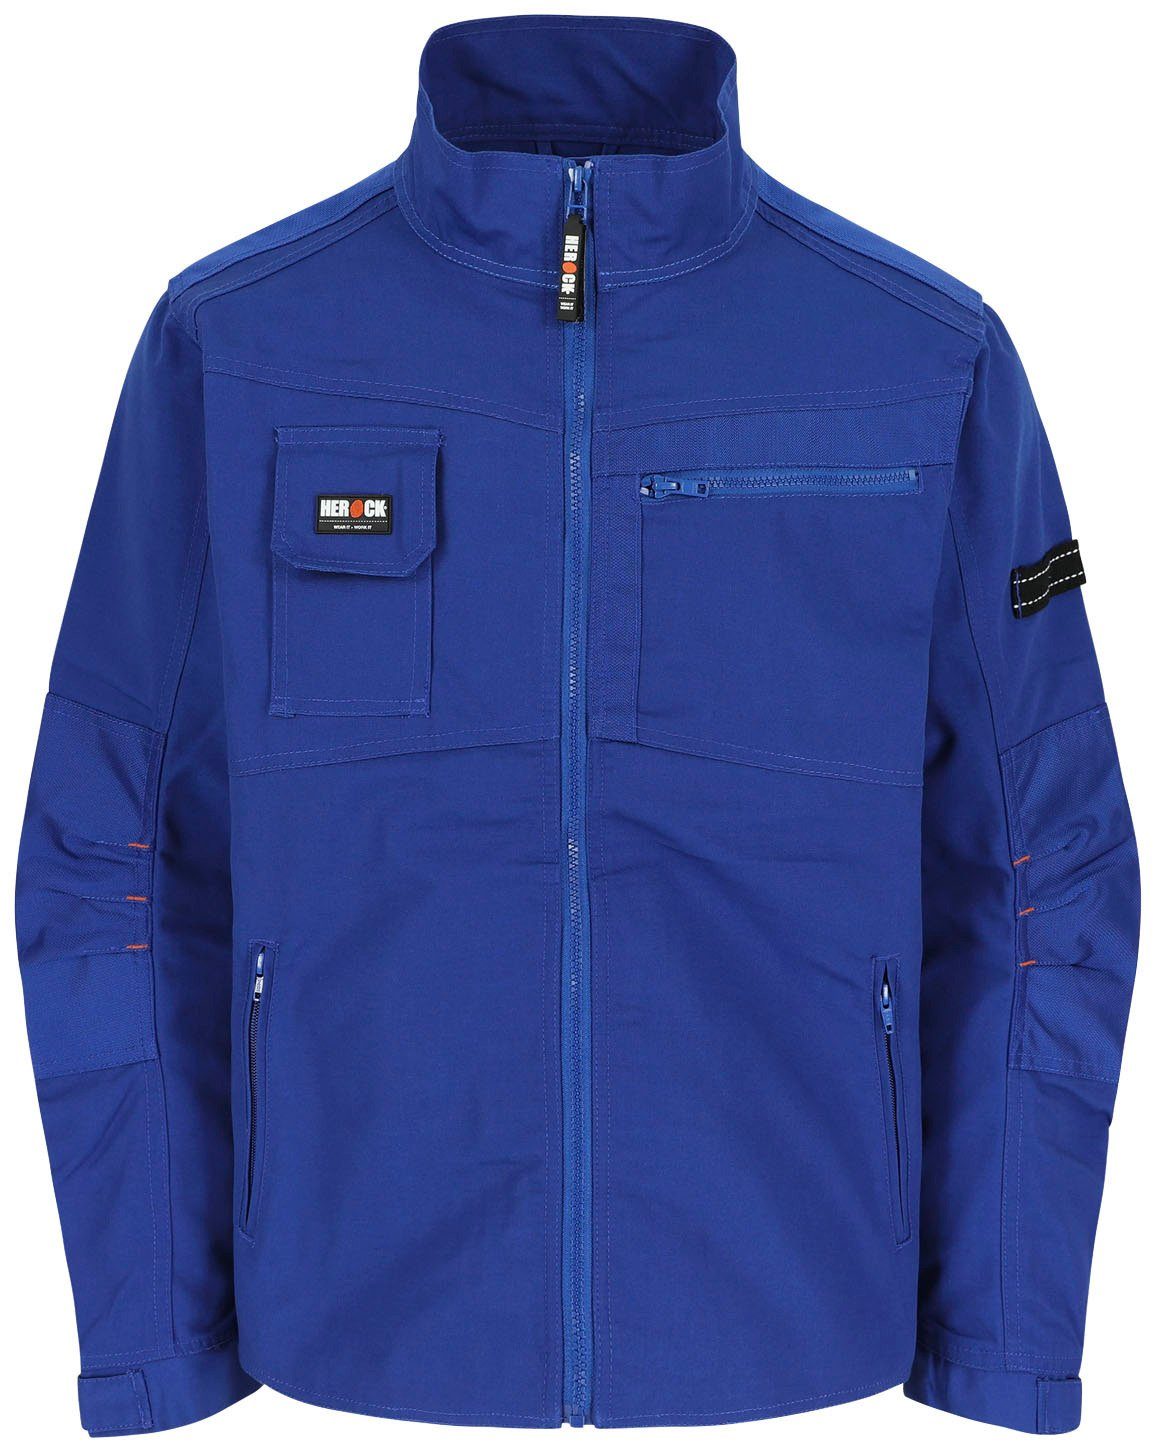 robust 7 verstellbare Wasserabweisend Taschen - Jacke Herock Anzar blau - Bündchen Arbeitsjacke -